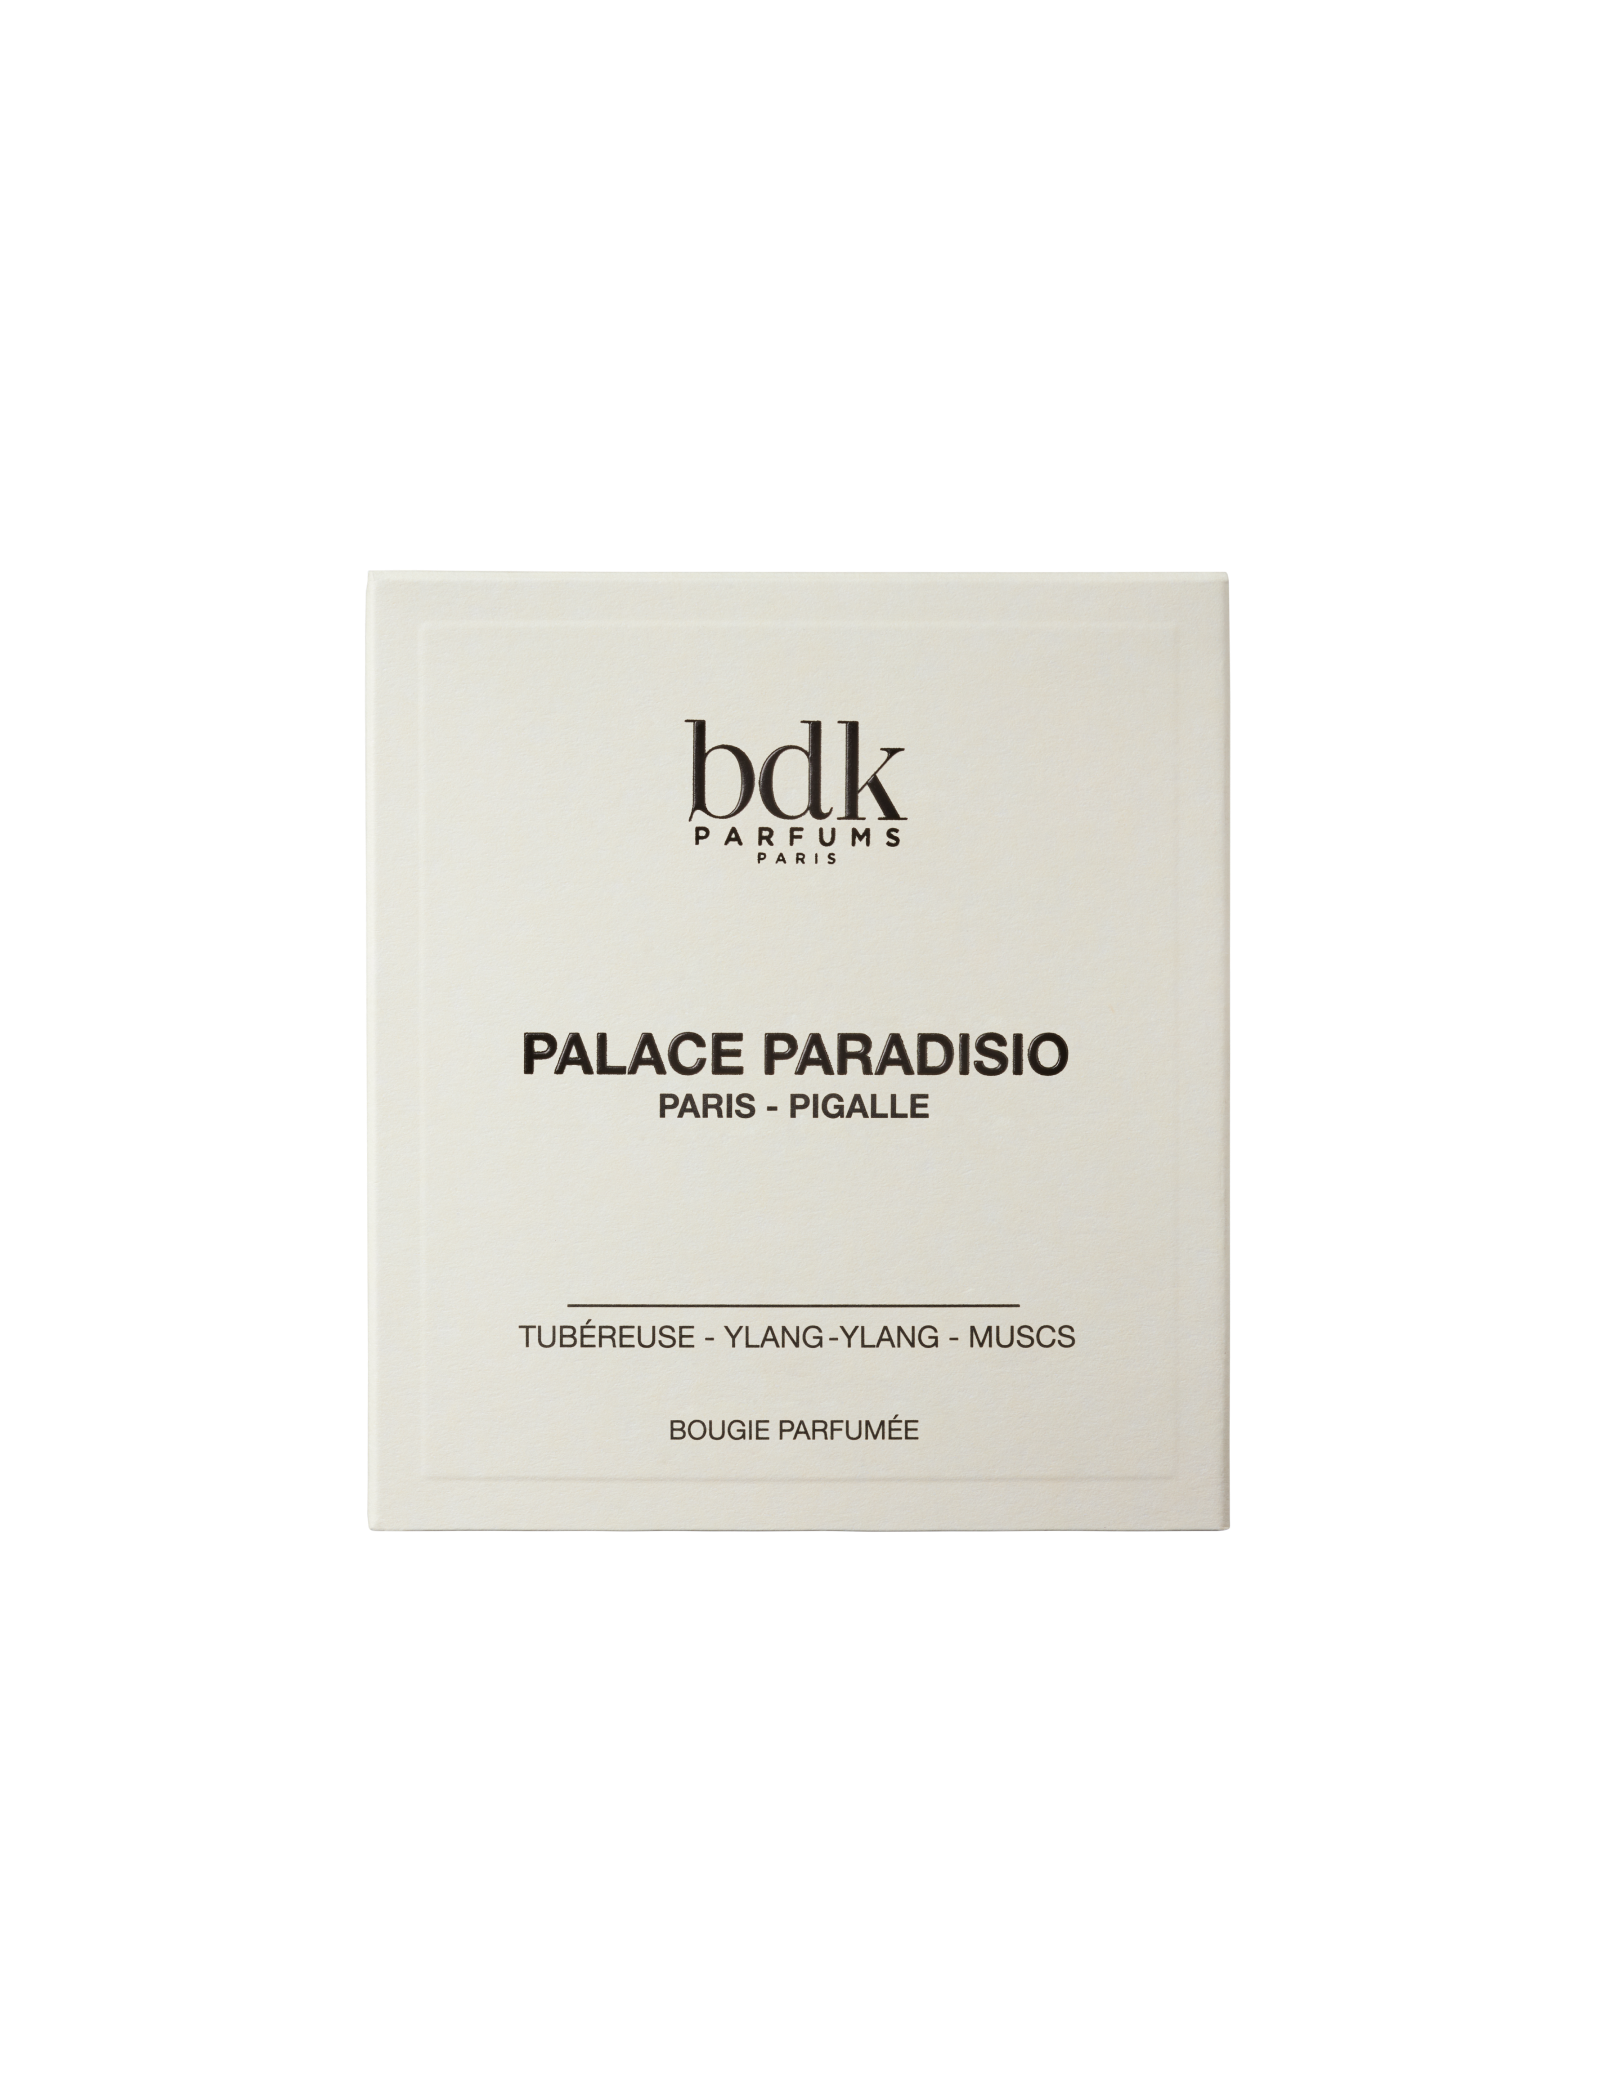 Palace Paradisio